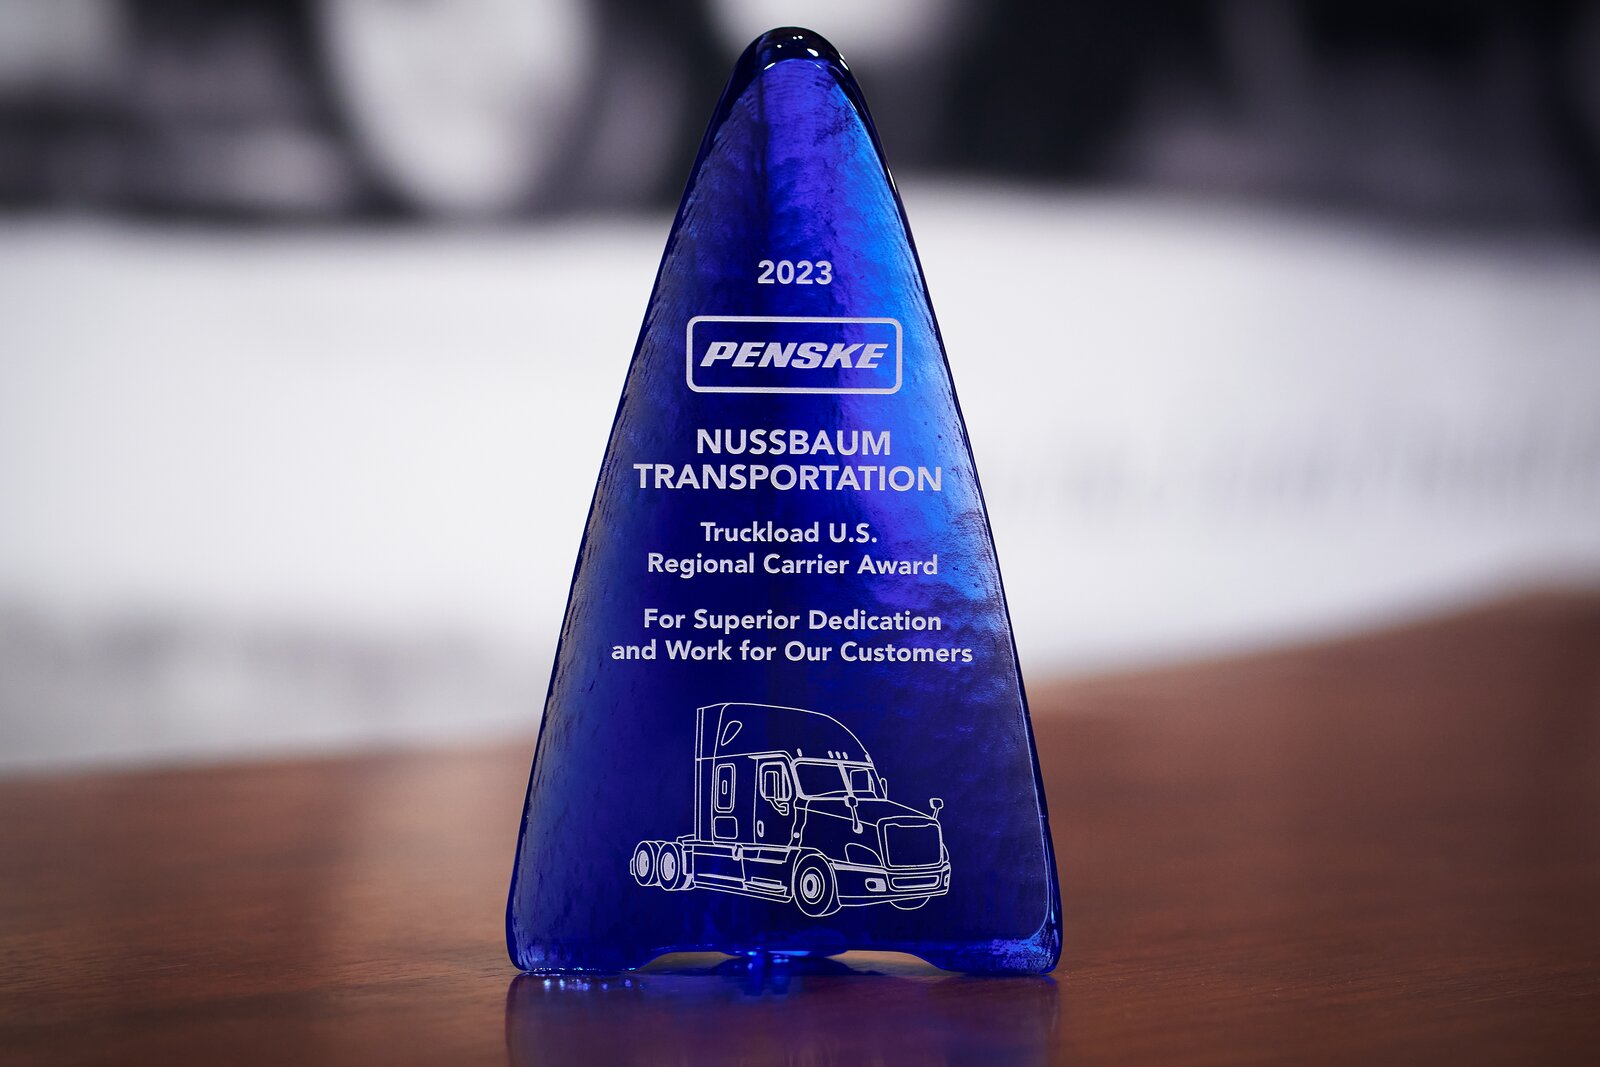 Nussbaum wins Truckload Regional Carrier Award from Penske